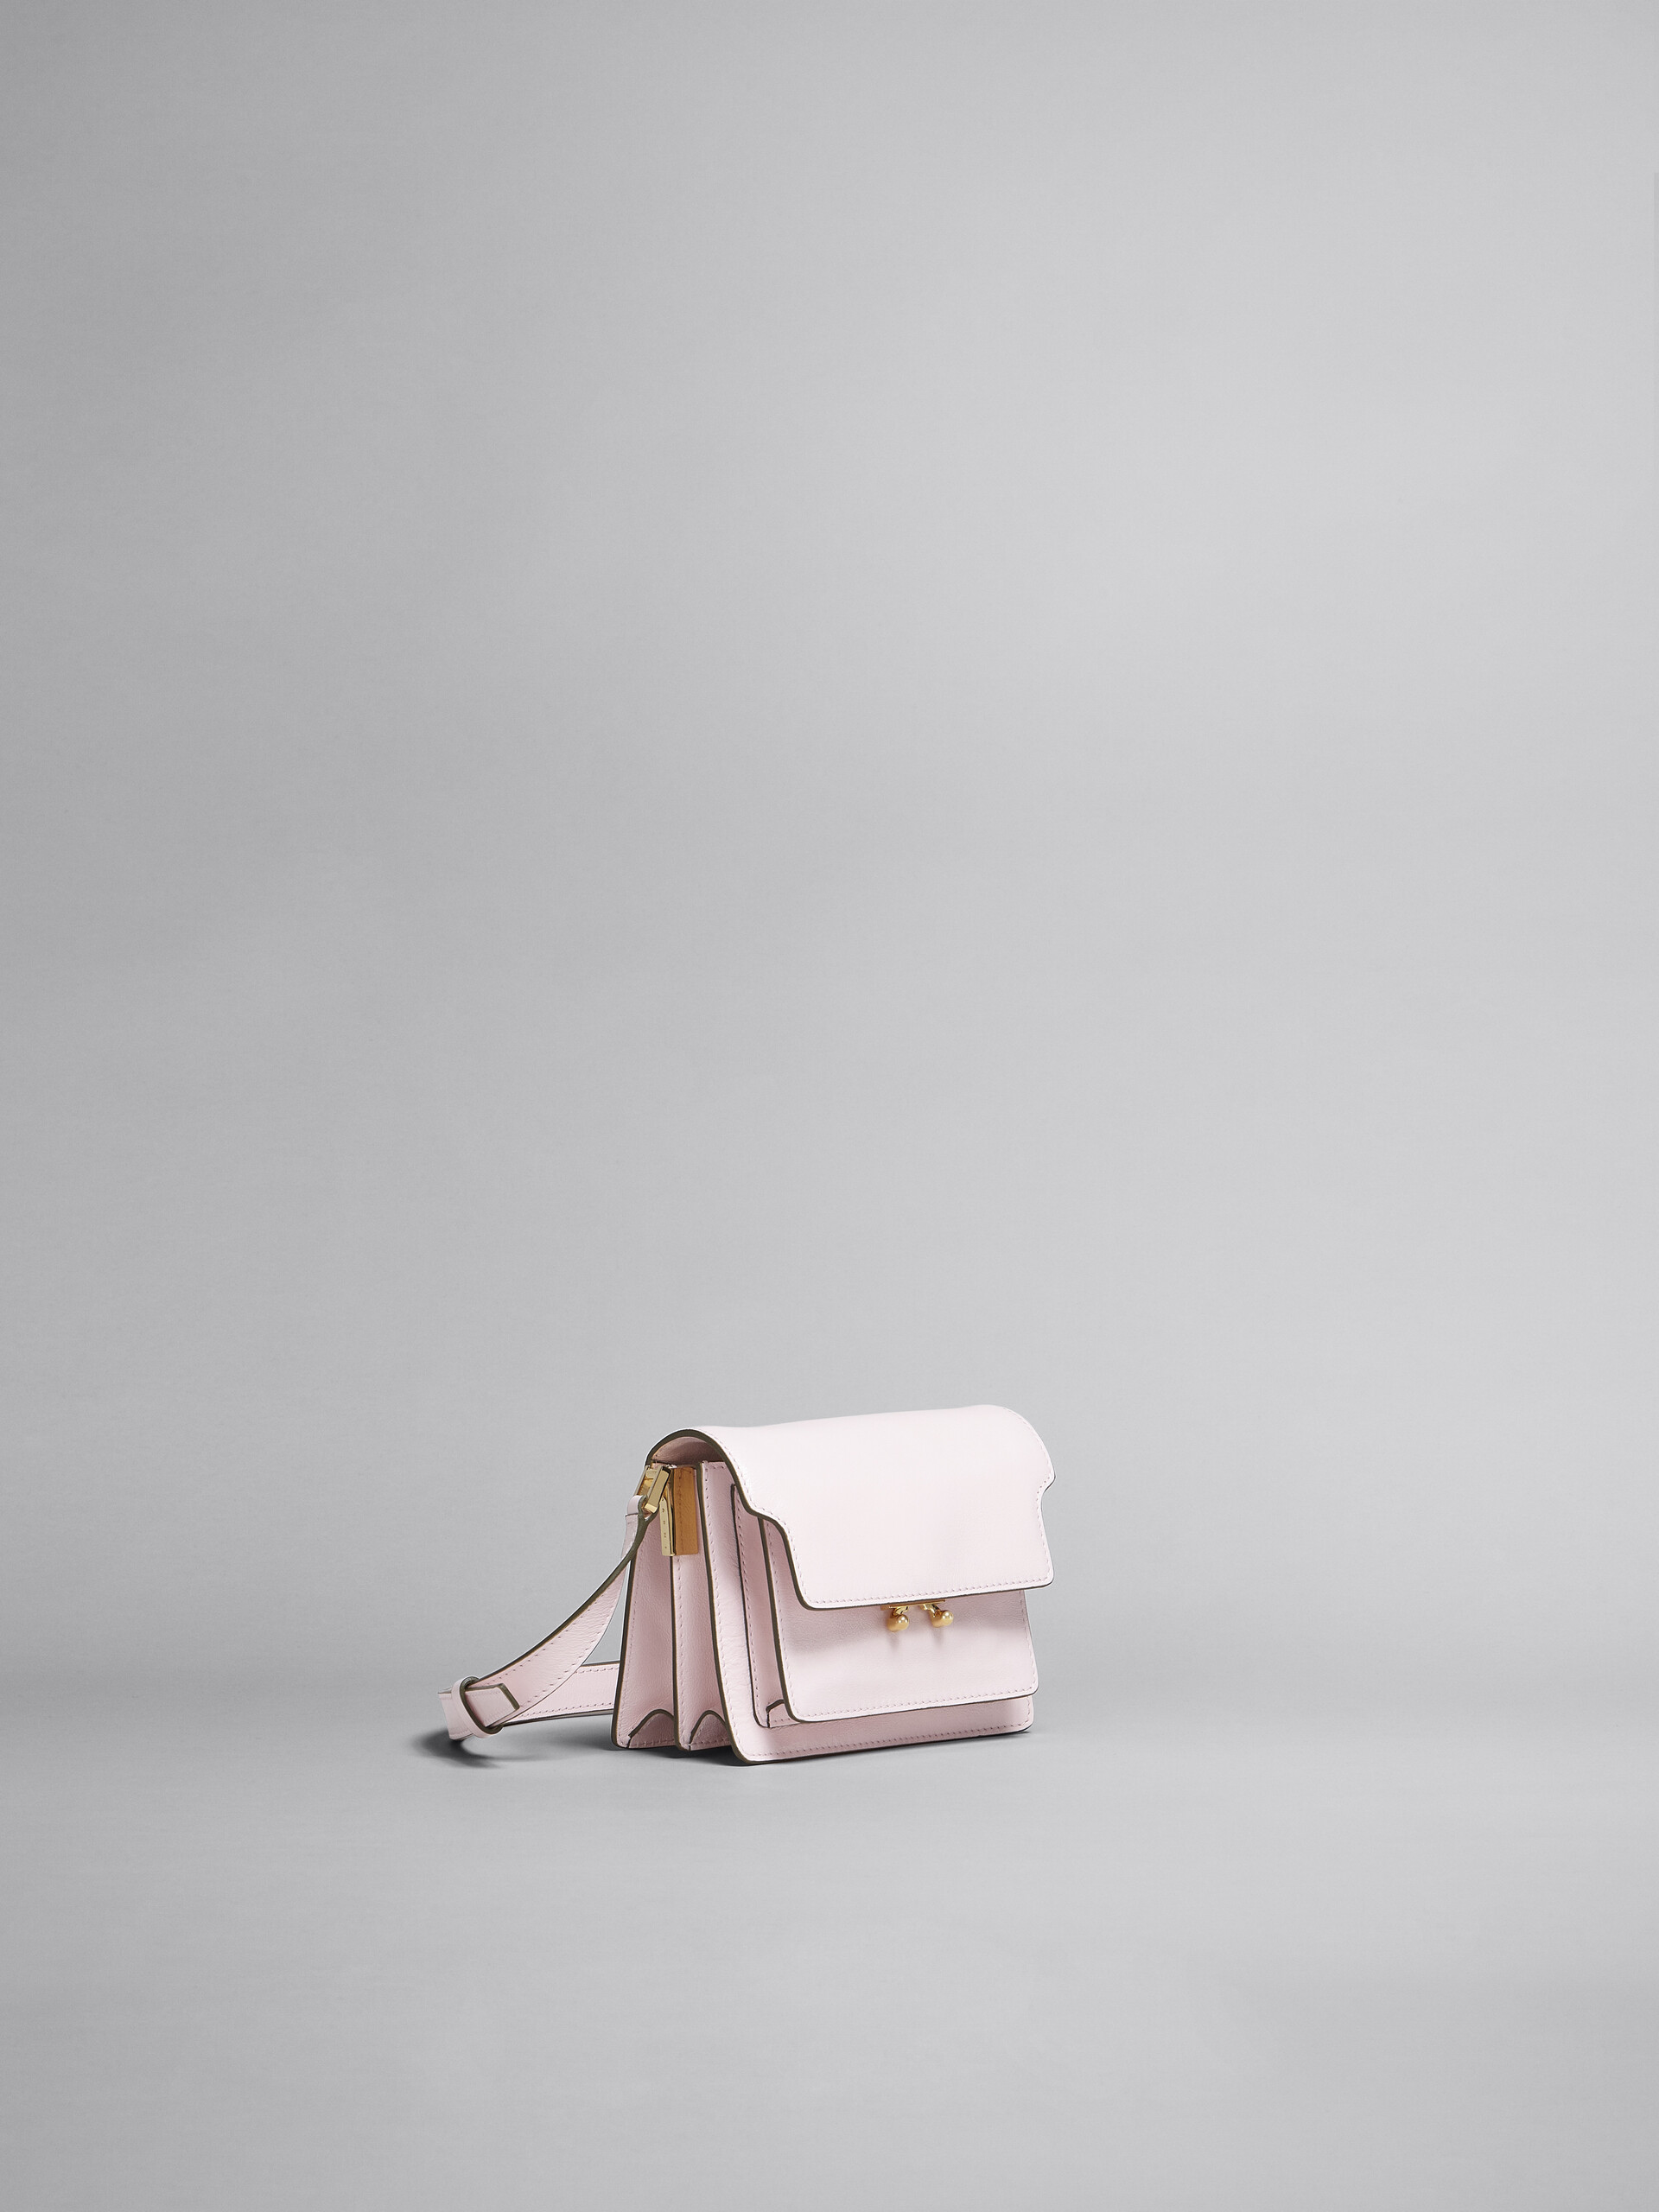 TRUNK SOFT bag mini in pelle rosa - Borse a spalla - Image 5